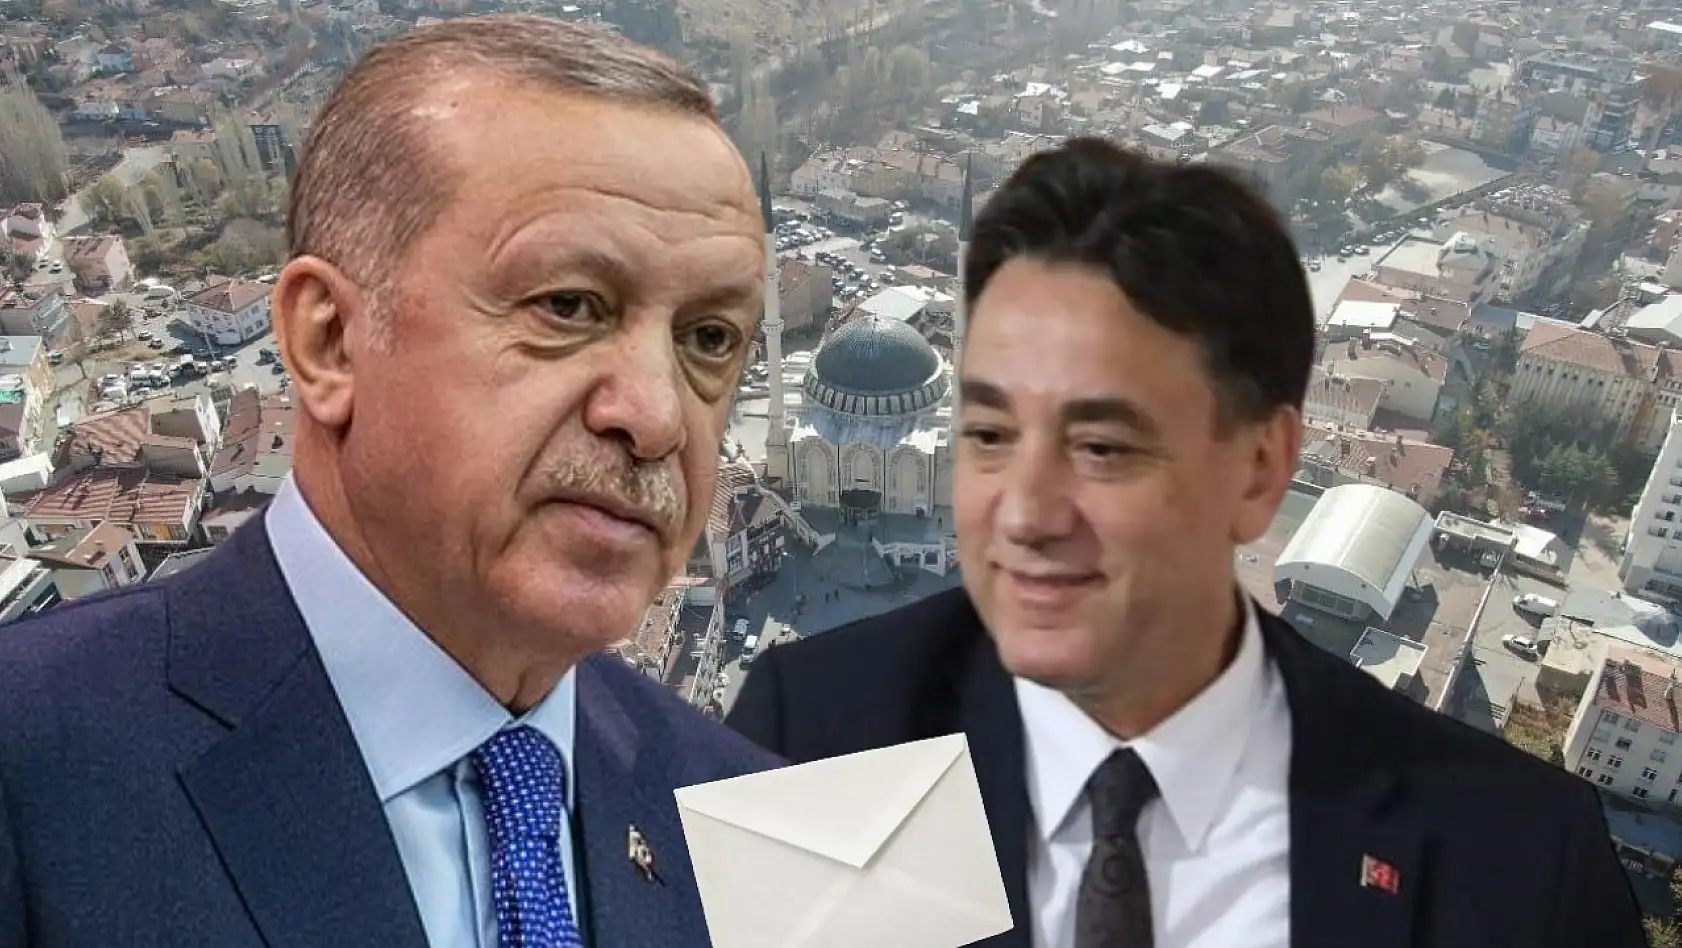 Develi Adayı 1995 senesinde Erdoğan'a neden mektup yazmış?